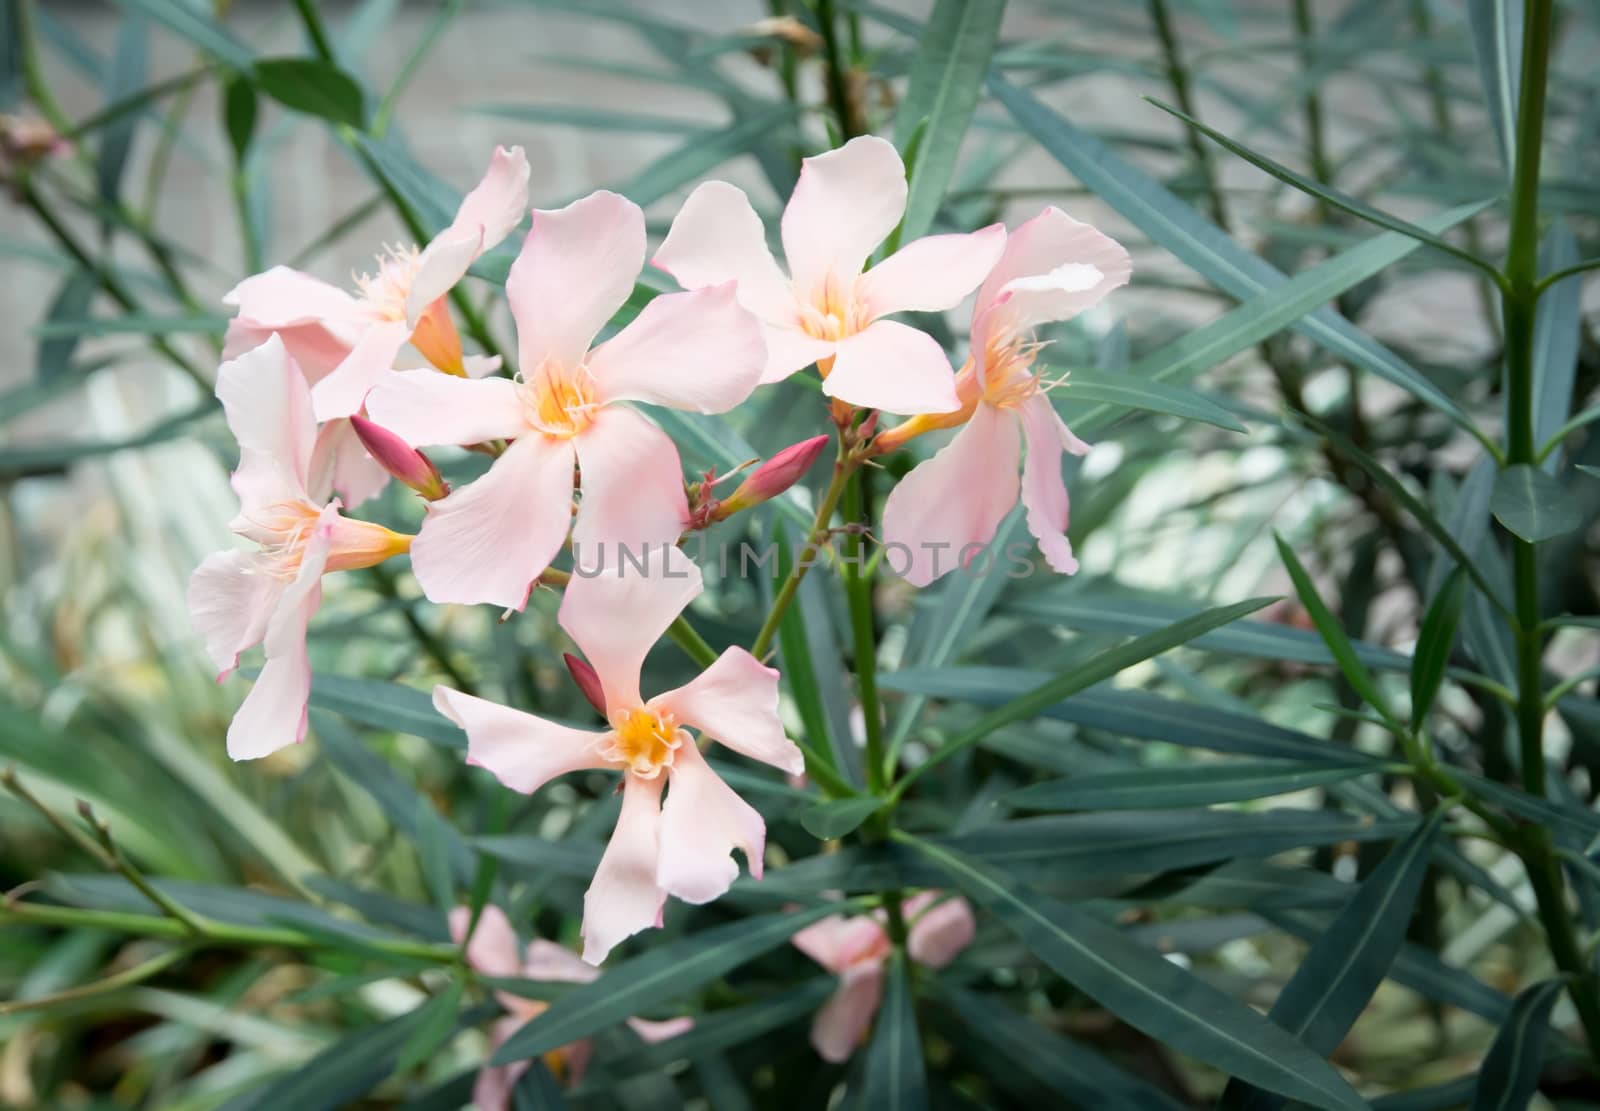 Oleander flowers by ArtesiaWells